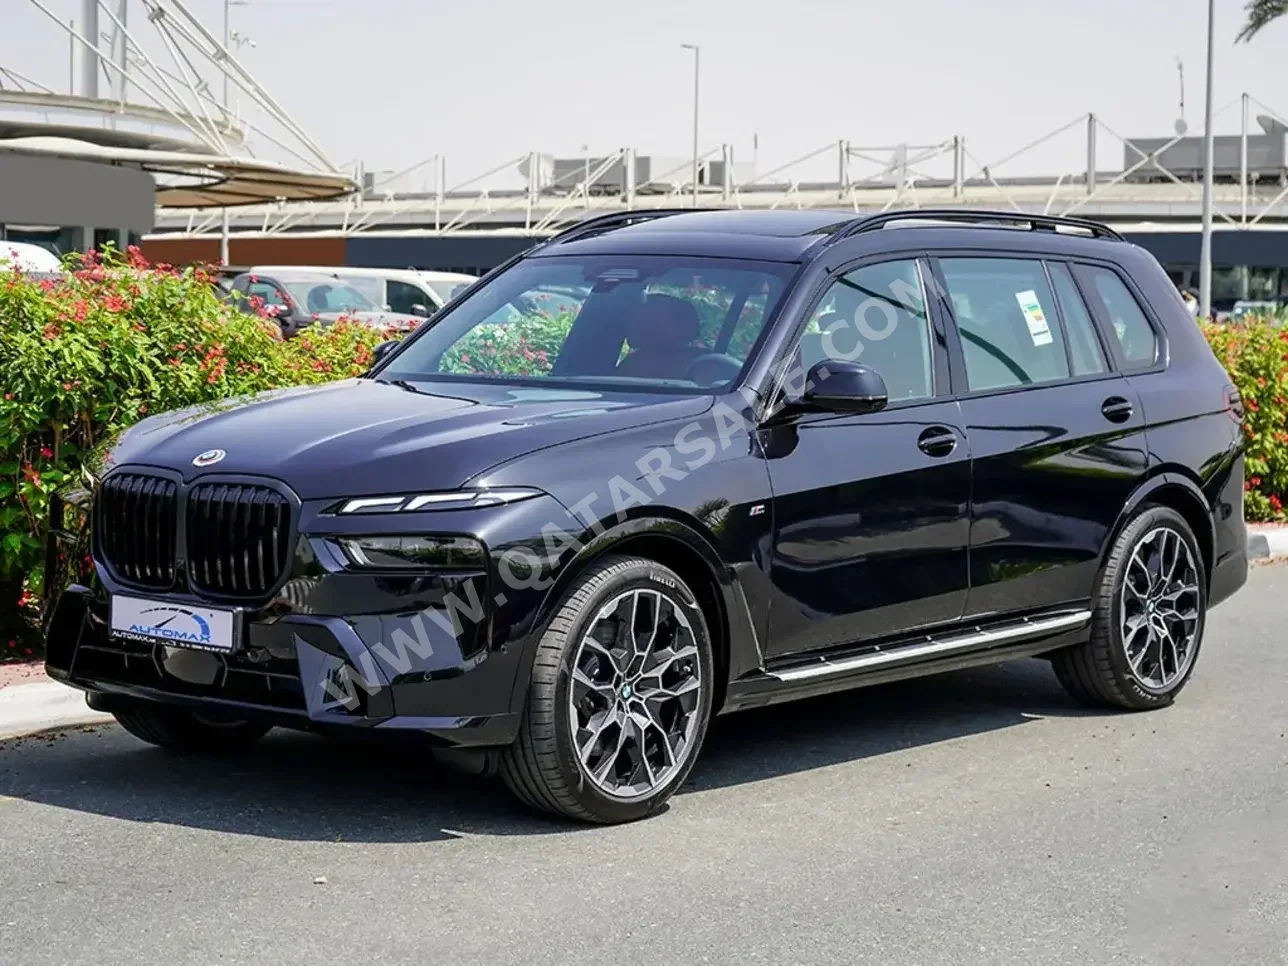 BMW  X-Series  X7 40i  2024  Automatic  0 Km  6 Cylinder  All Wheel Drive (AWD)  SUV  Black  With Warranty